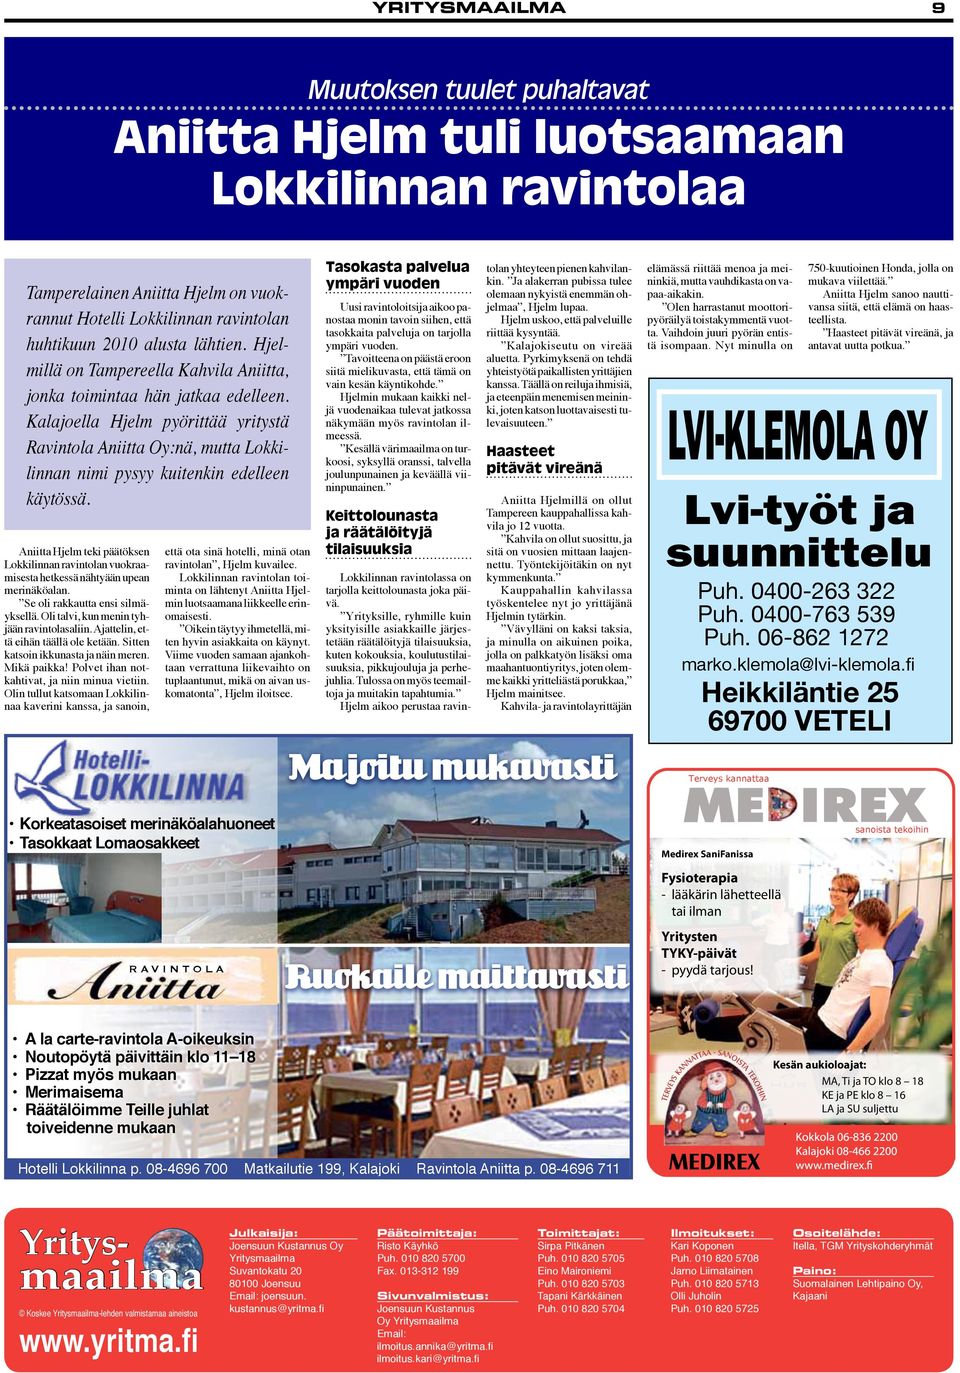 Kalajoella Hjelm pyörittää yritystä Ravintola Aniitta Oy:nä, mutta Lokkilinnan nimi pysyy kuitenkin edelleen käytössä.